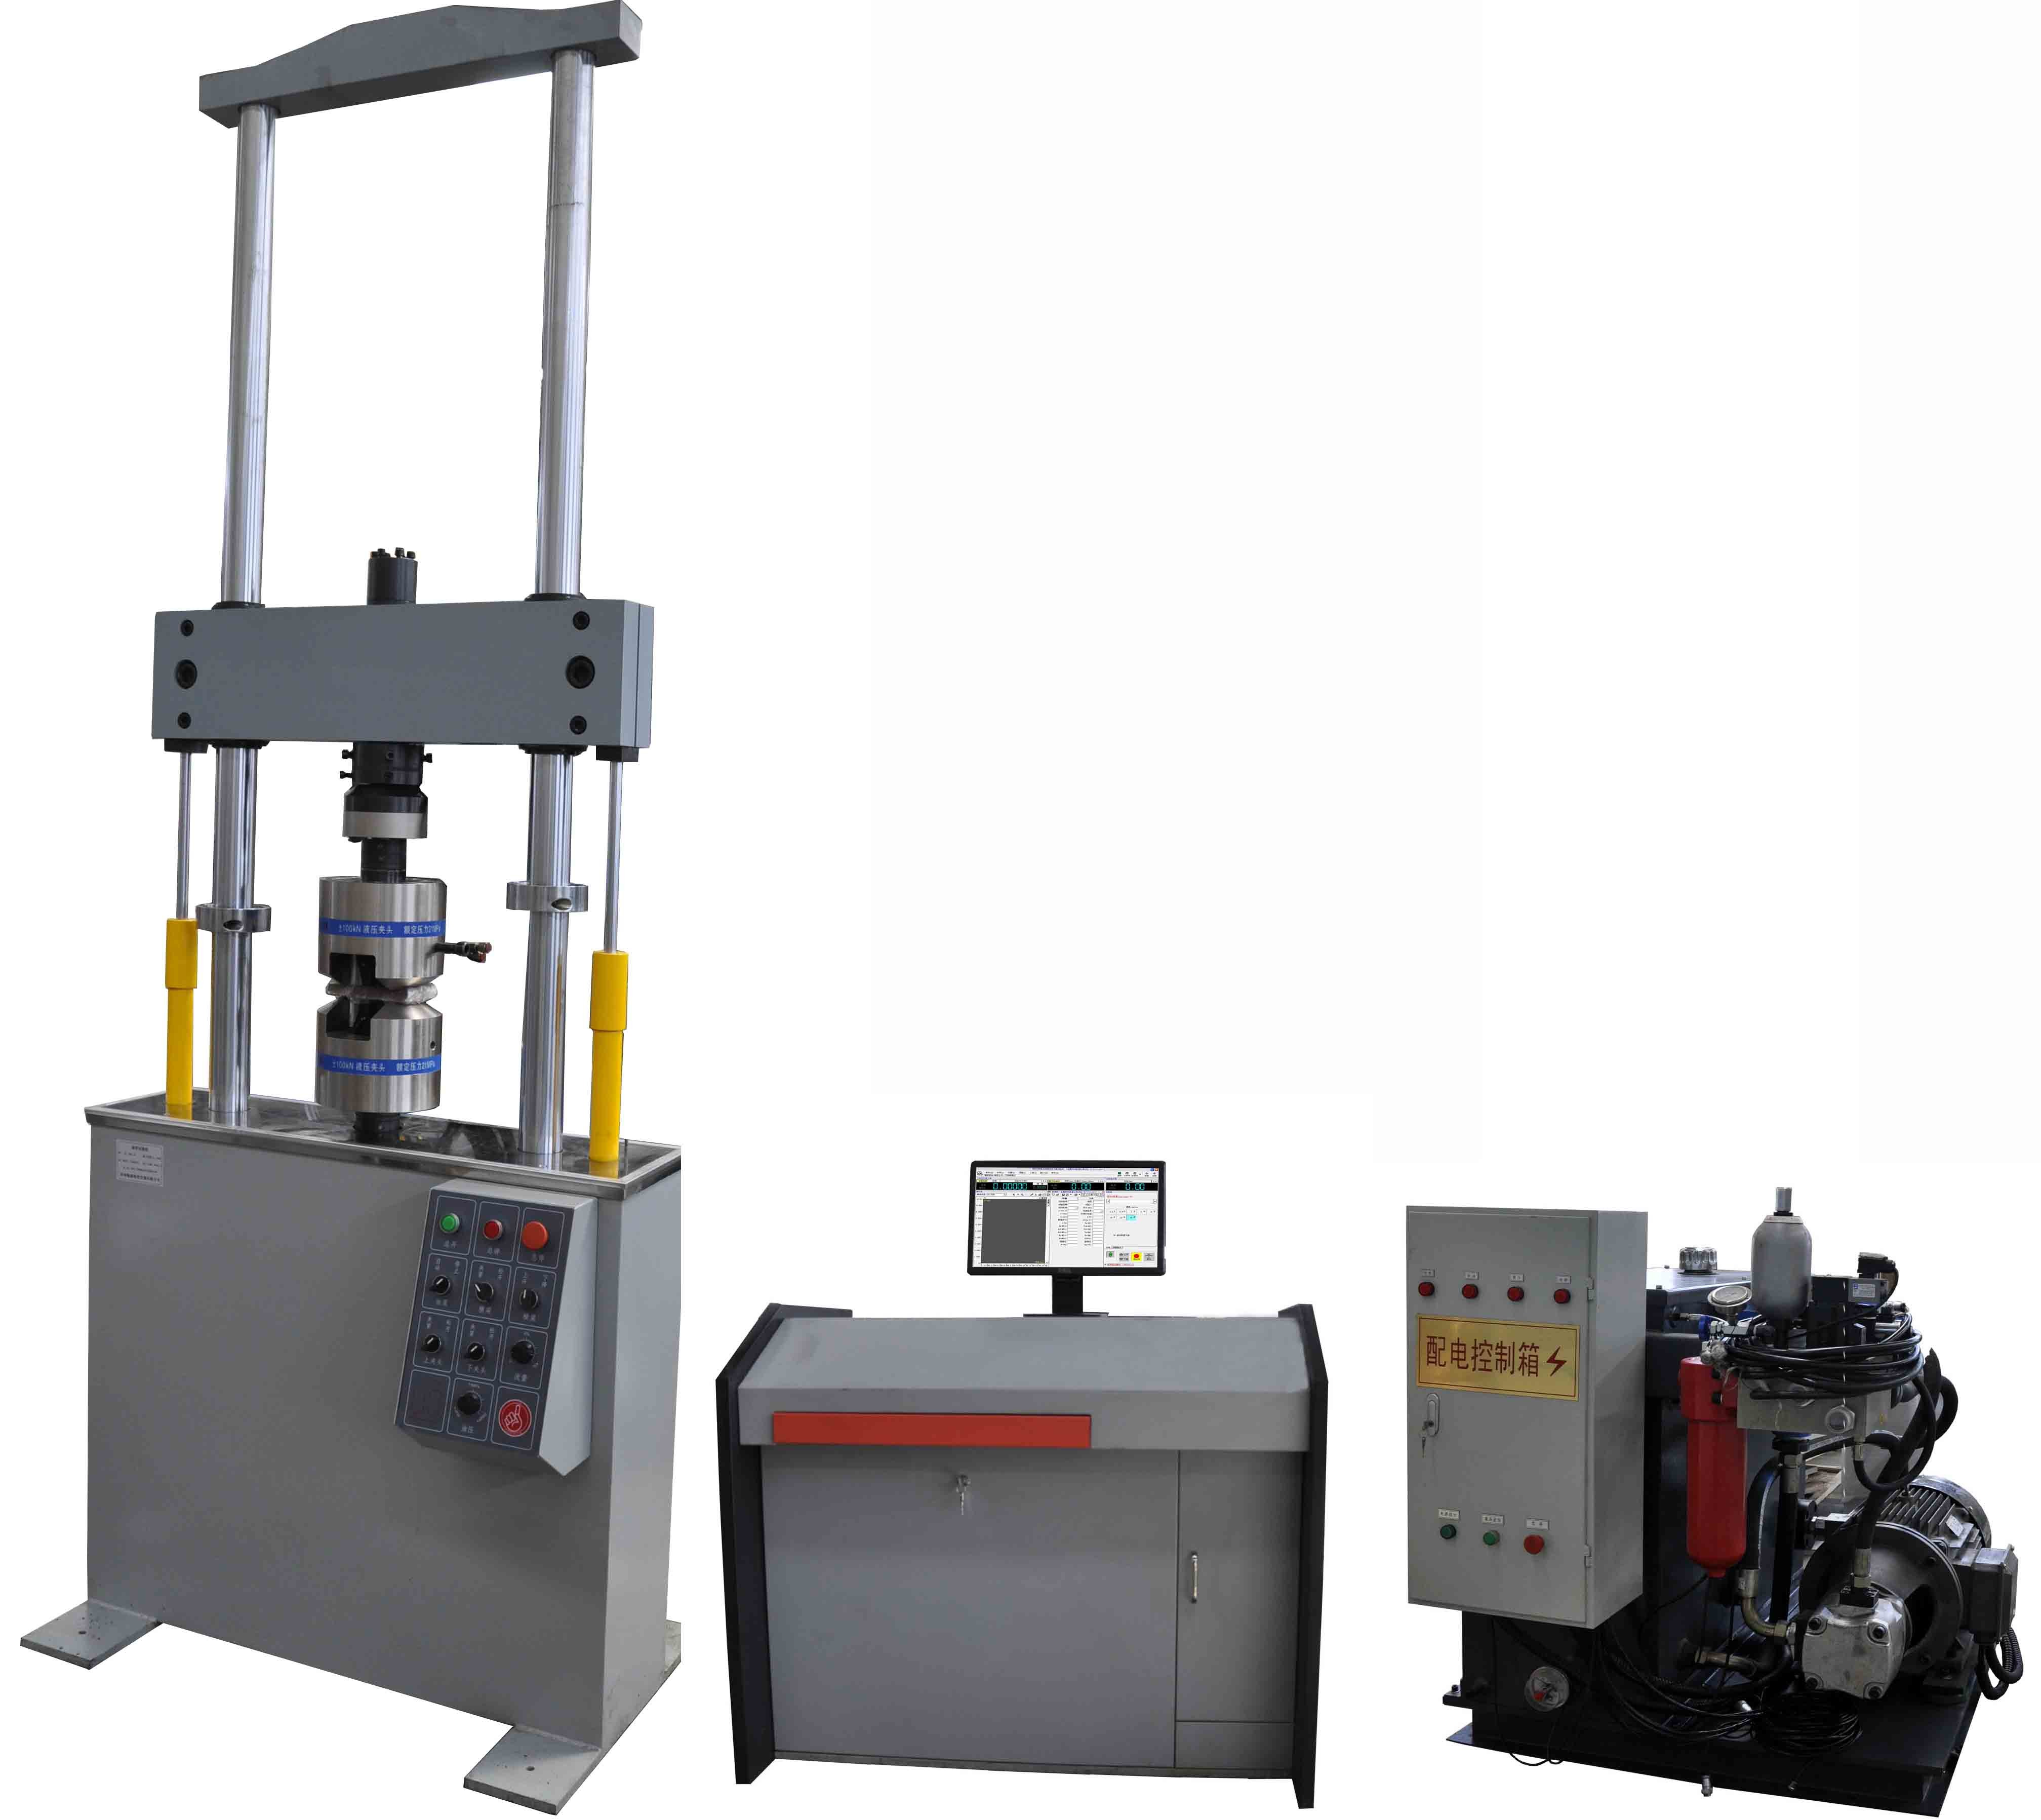 30 KN Servo Máquina de ensayo universal hidráulica para ensayo de propiedades mecánicas 750 mm